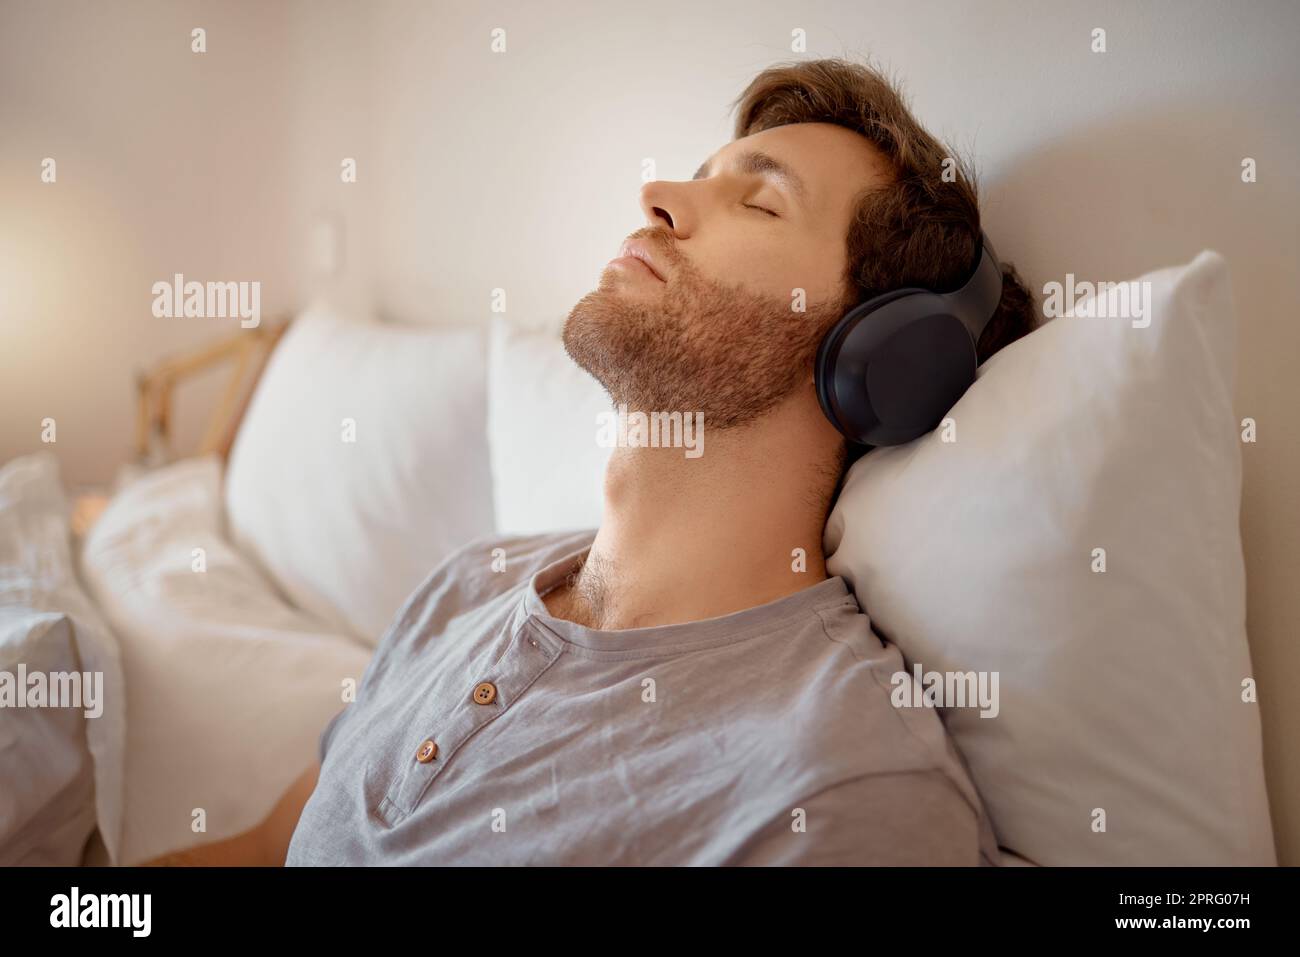 Entspannen Sie sich, meditieren und ruhen Sie sich aus, während Sie Musik über die kabellosen Kopfhörer hören und sich zu Hause auf dem Bett entspannen. Entspannter und ruhiger Mann, der aufgrund von Hörbüchern oder Podcasts in seinem Schlafzimmer träumt Stockfoto